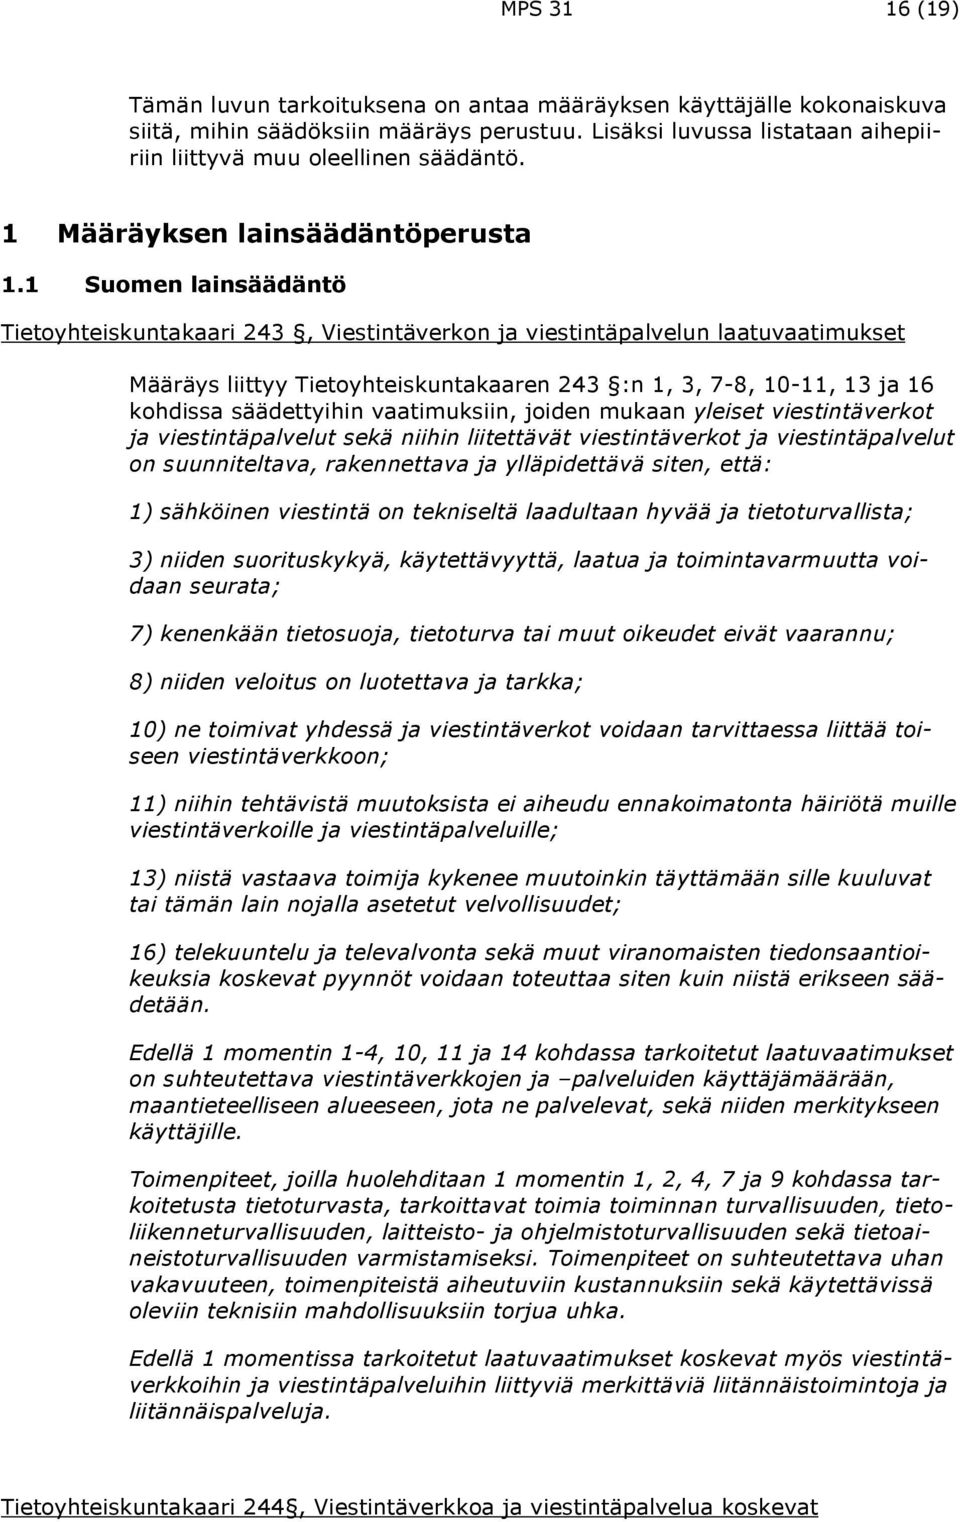 1 Suomen lainsäädäntö Tietoyhteiskuntakaari 243, Viestintäverkon ja viestintäpalvelun laatuvaatimukset Määräys liittyy Tietoyhteiskuntakaaren 243 :n 1, 3, 7-8, 10-11, 13 ja 16 kohdissa säädettyihin